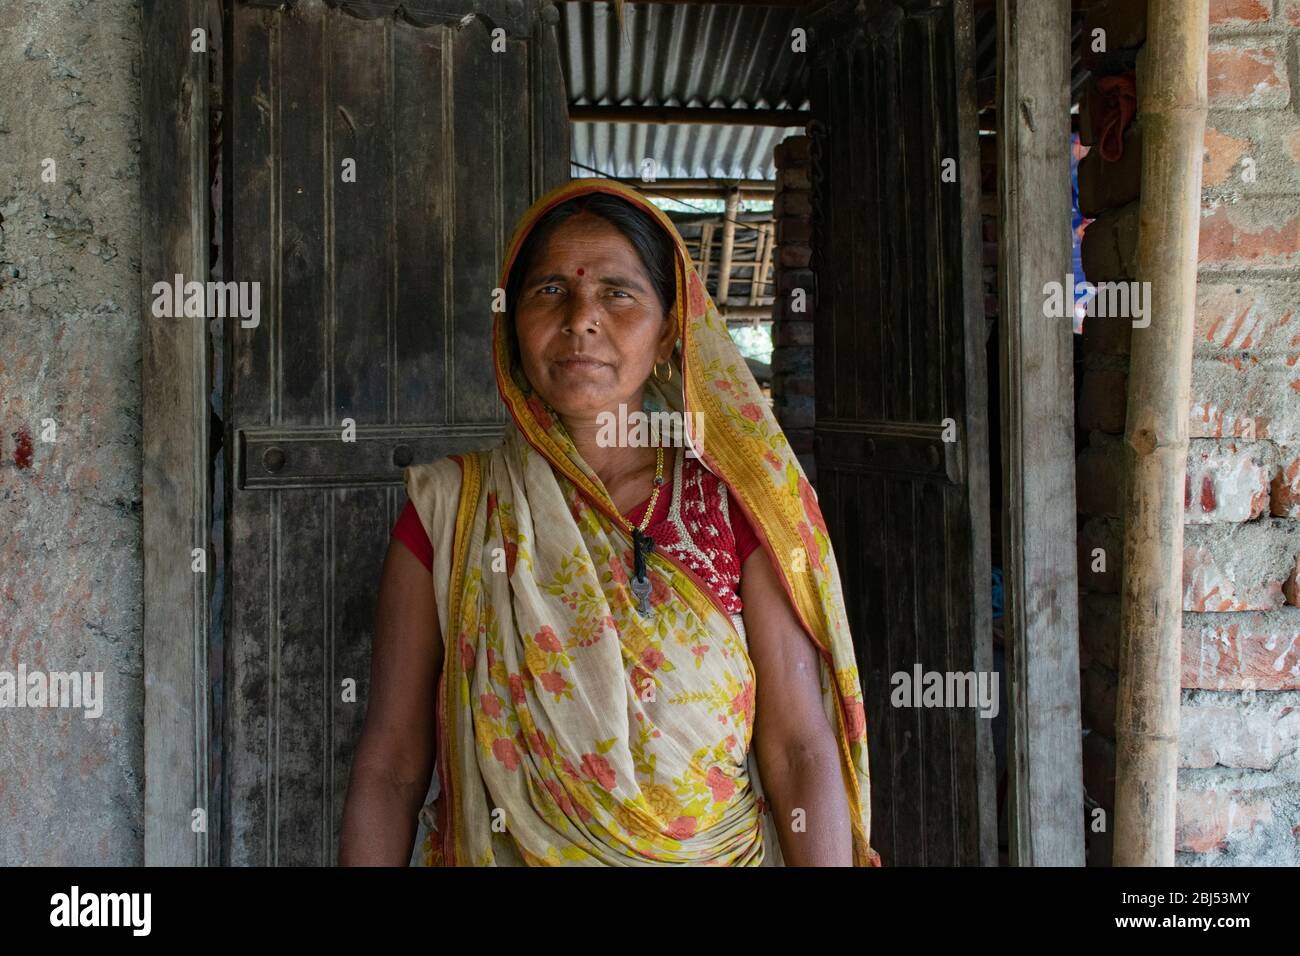 Portrait de la femme rurale, Inde Banque D'Images